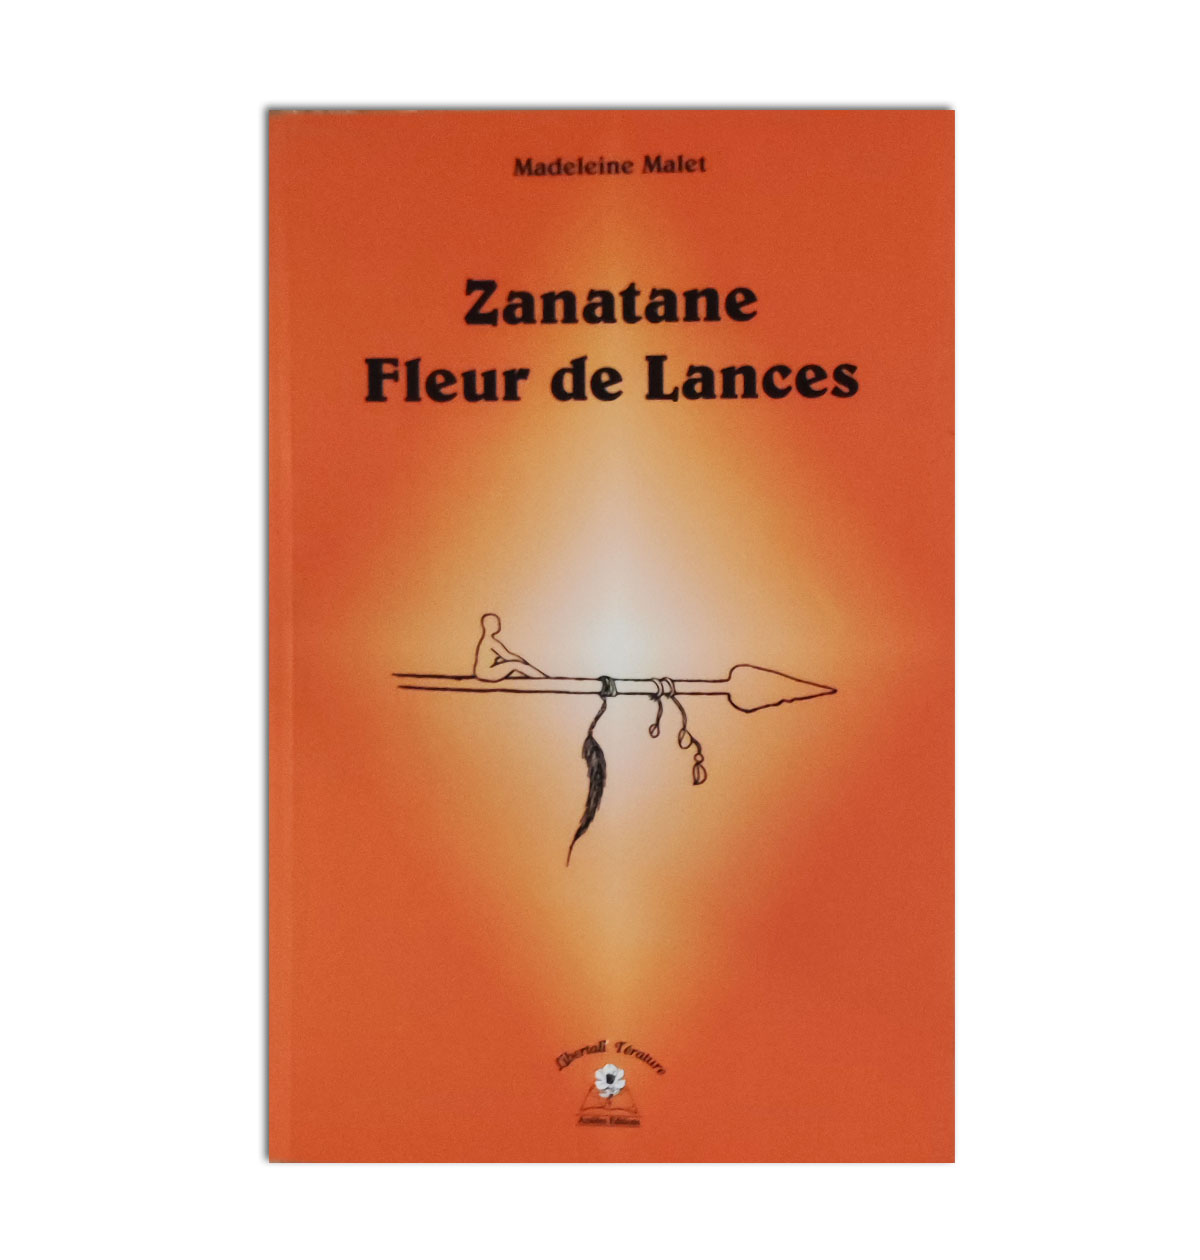 Zanatane: Fleur de Lances